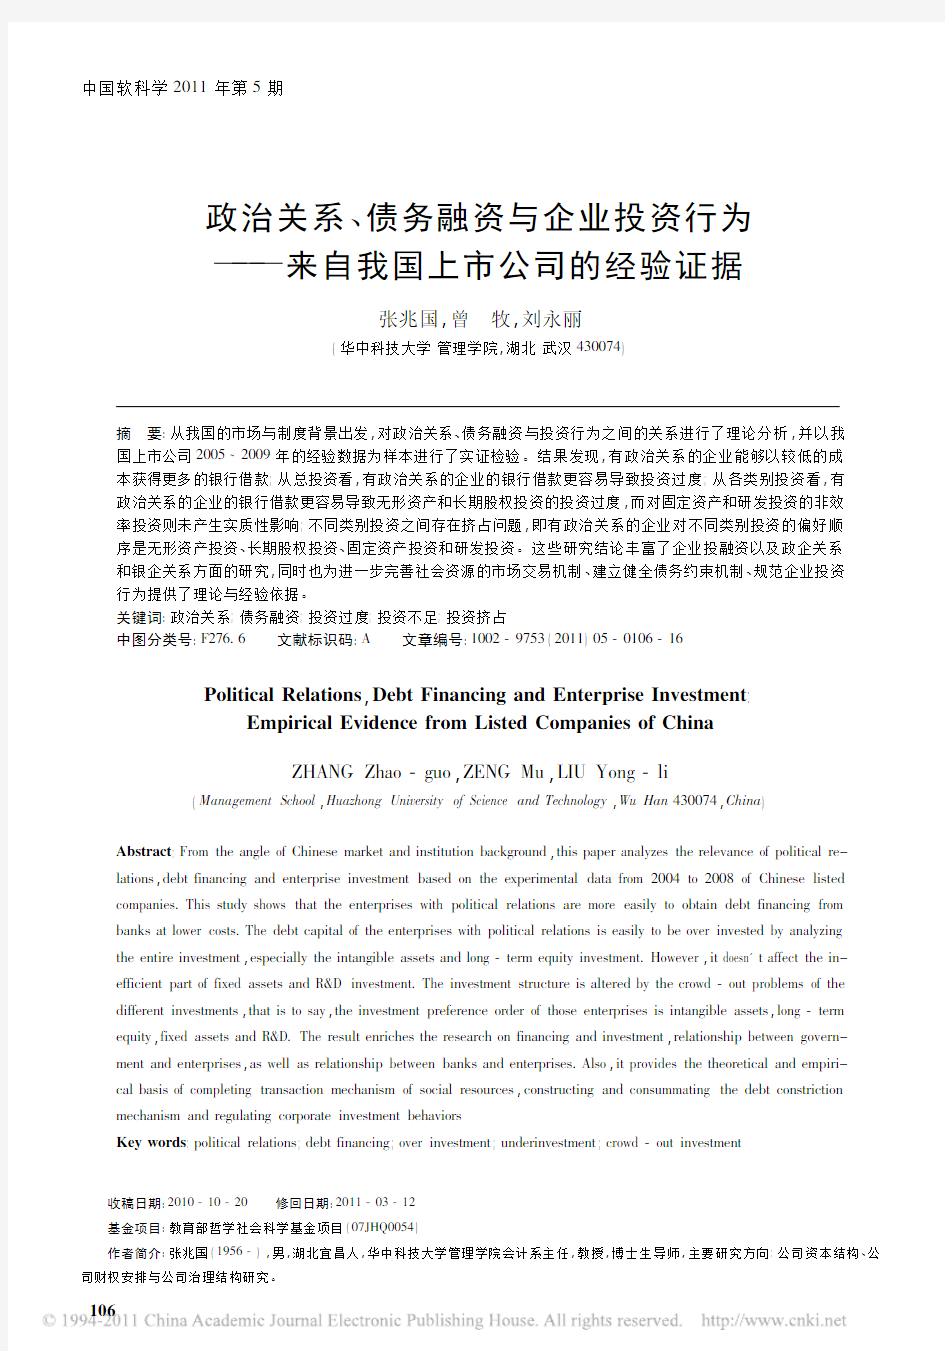 演示文章--中国软科学2011--政治关系、债务融资与企业投资行为--来自我国上市公司的经验证据